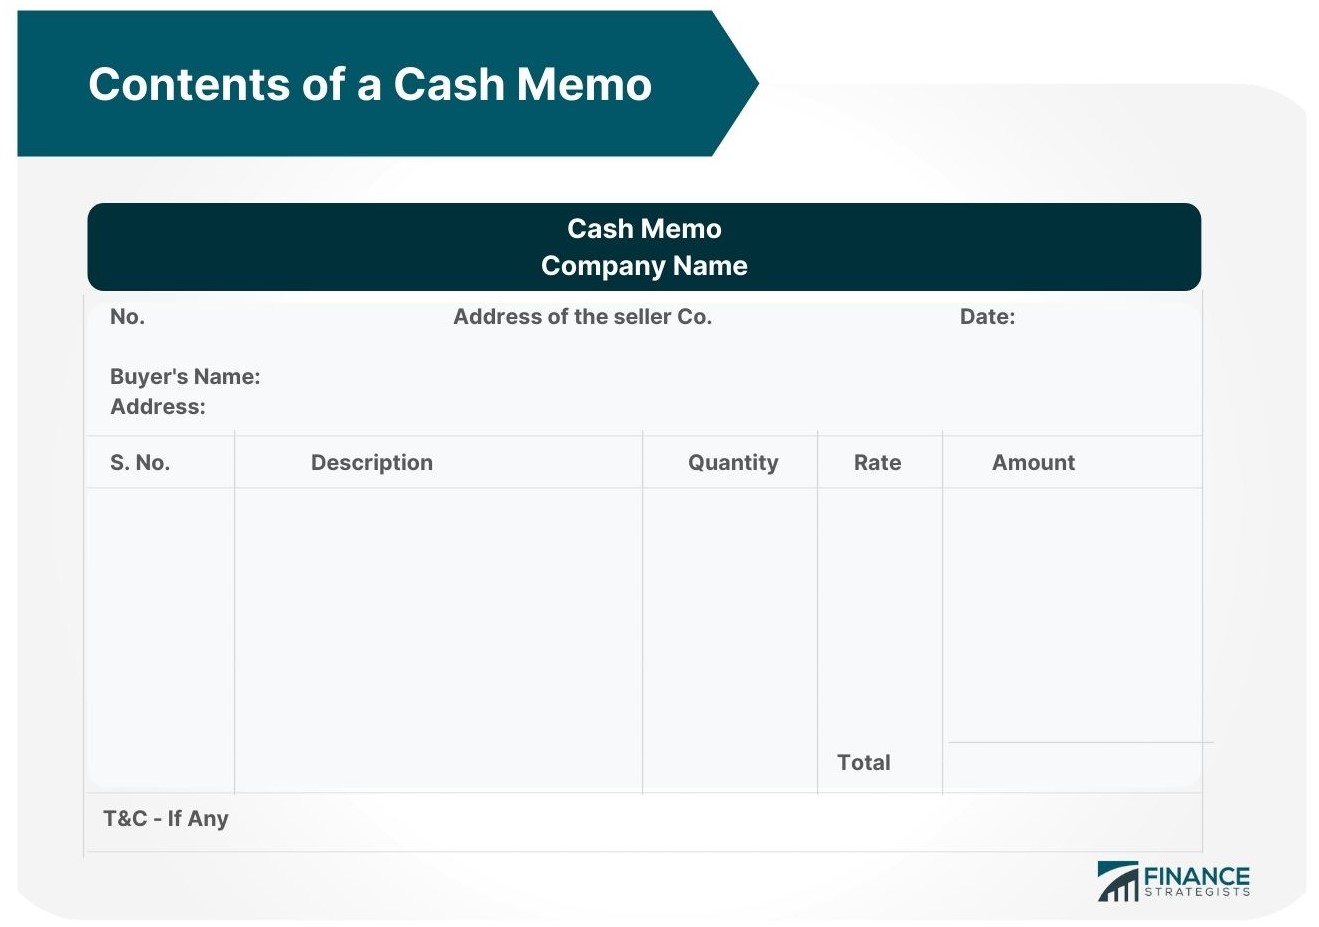 Contents of a Cash Memo